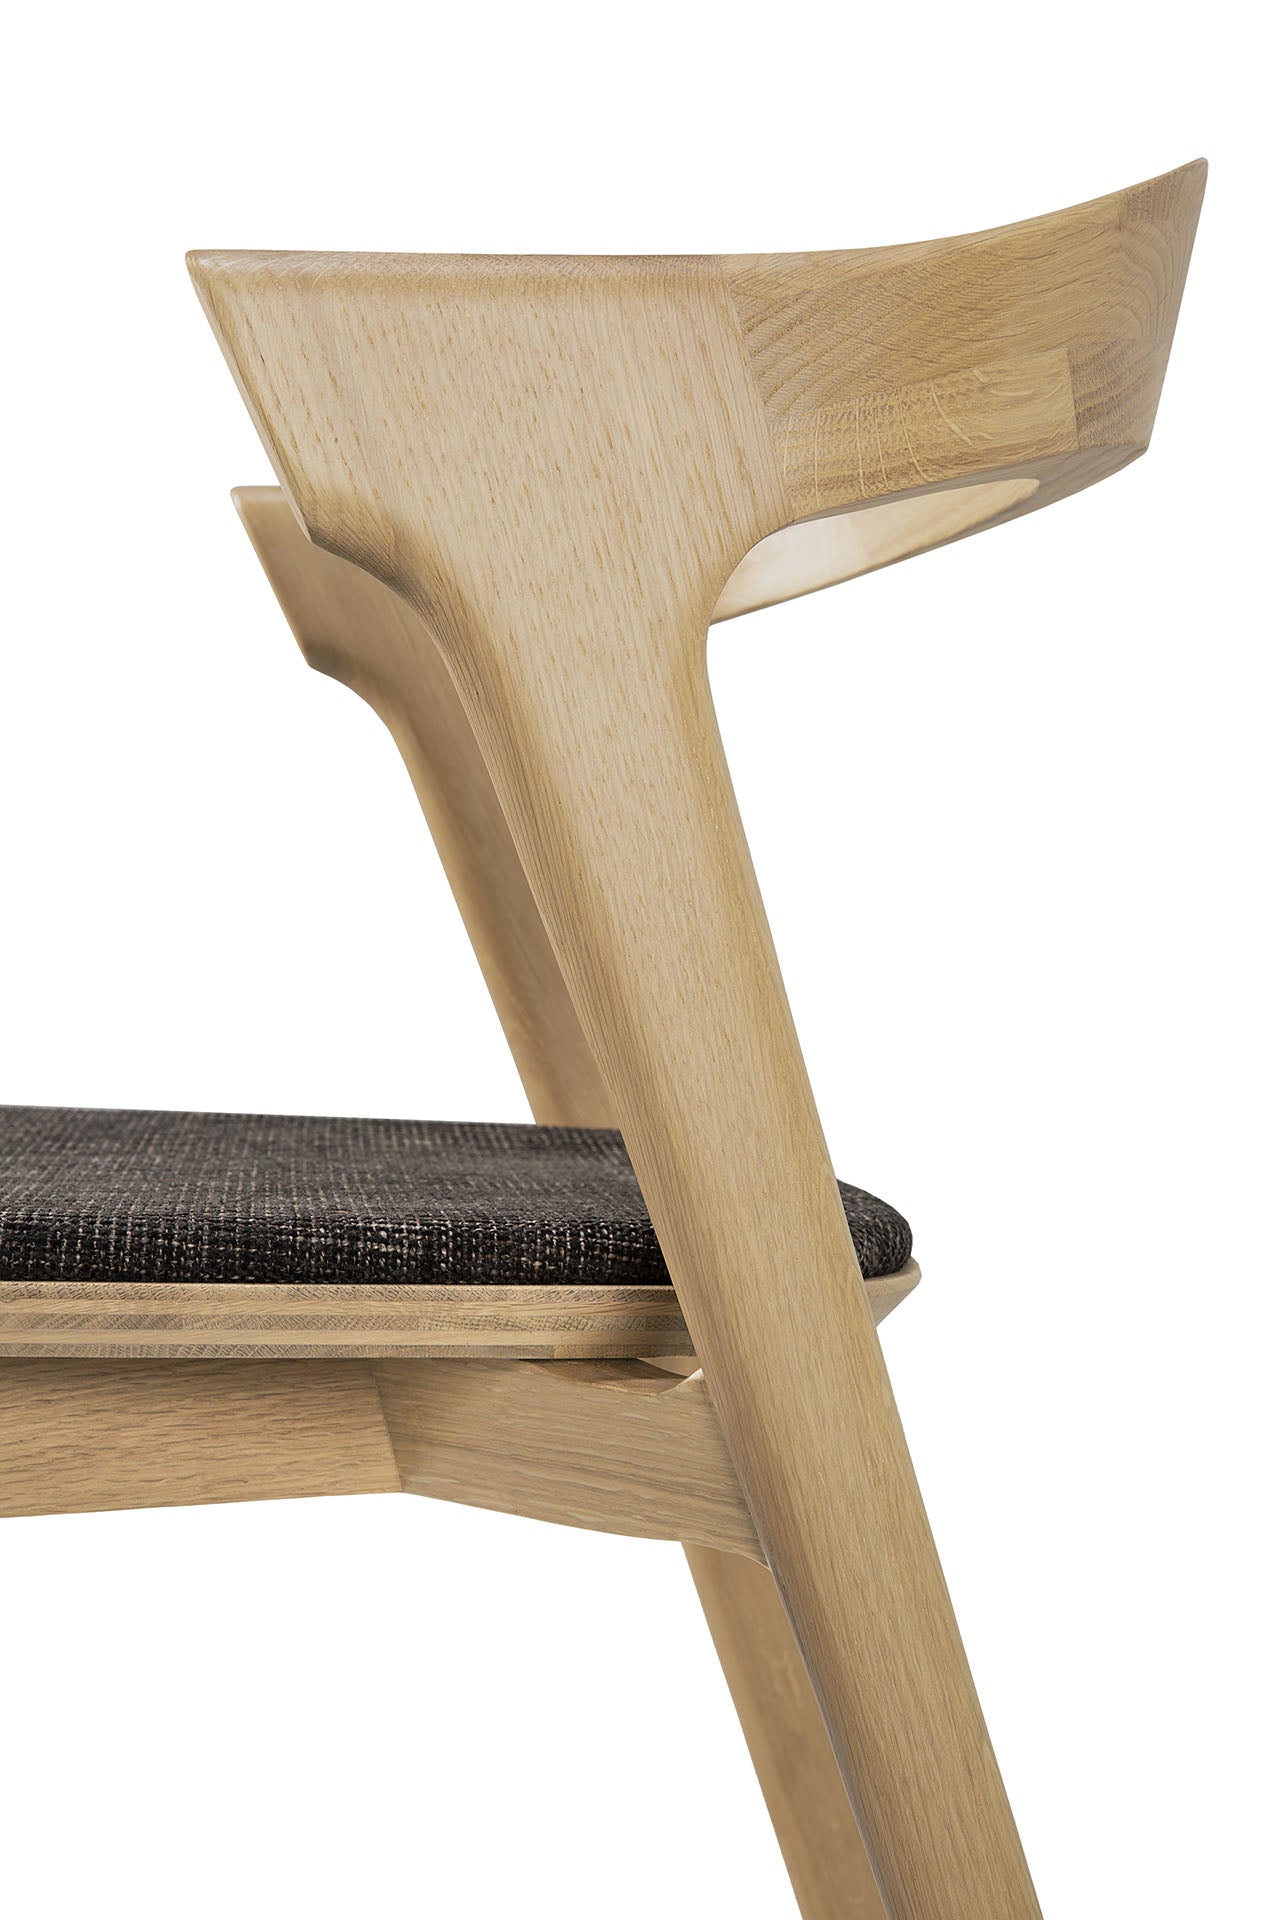 Bok Dining Chair by Alain Van Havre | Oak | Dark Brown Upholstery